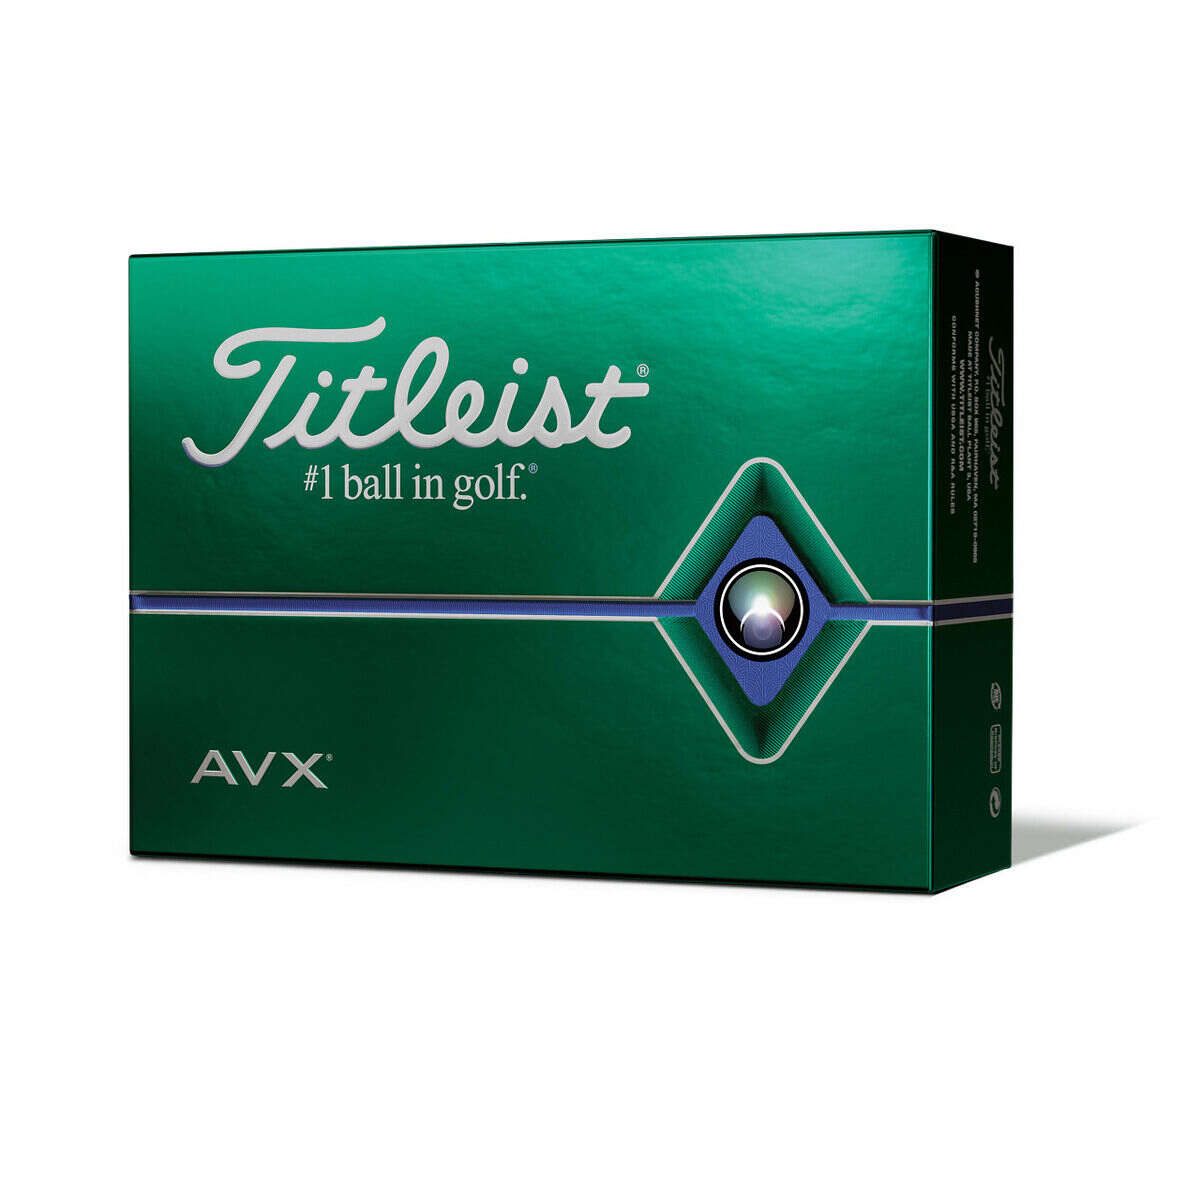 Titleist AVX Golf Balls, White, 12 Pack - image 1 of 6